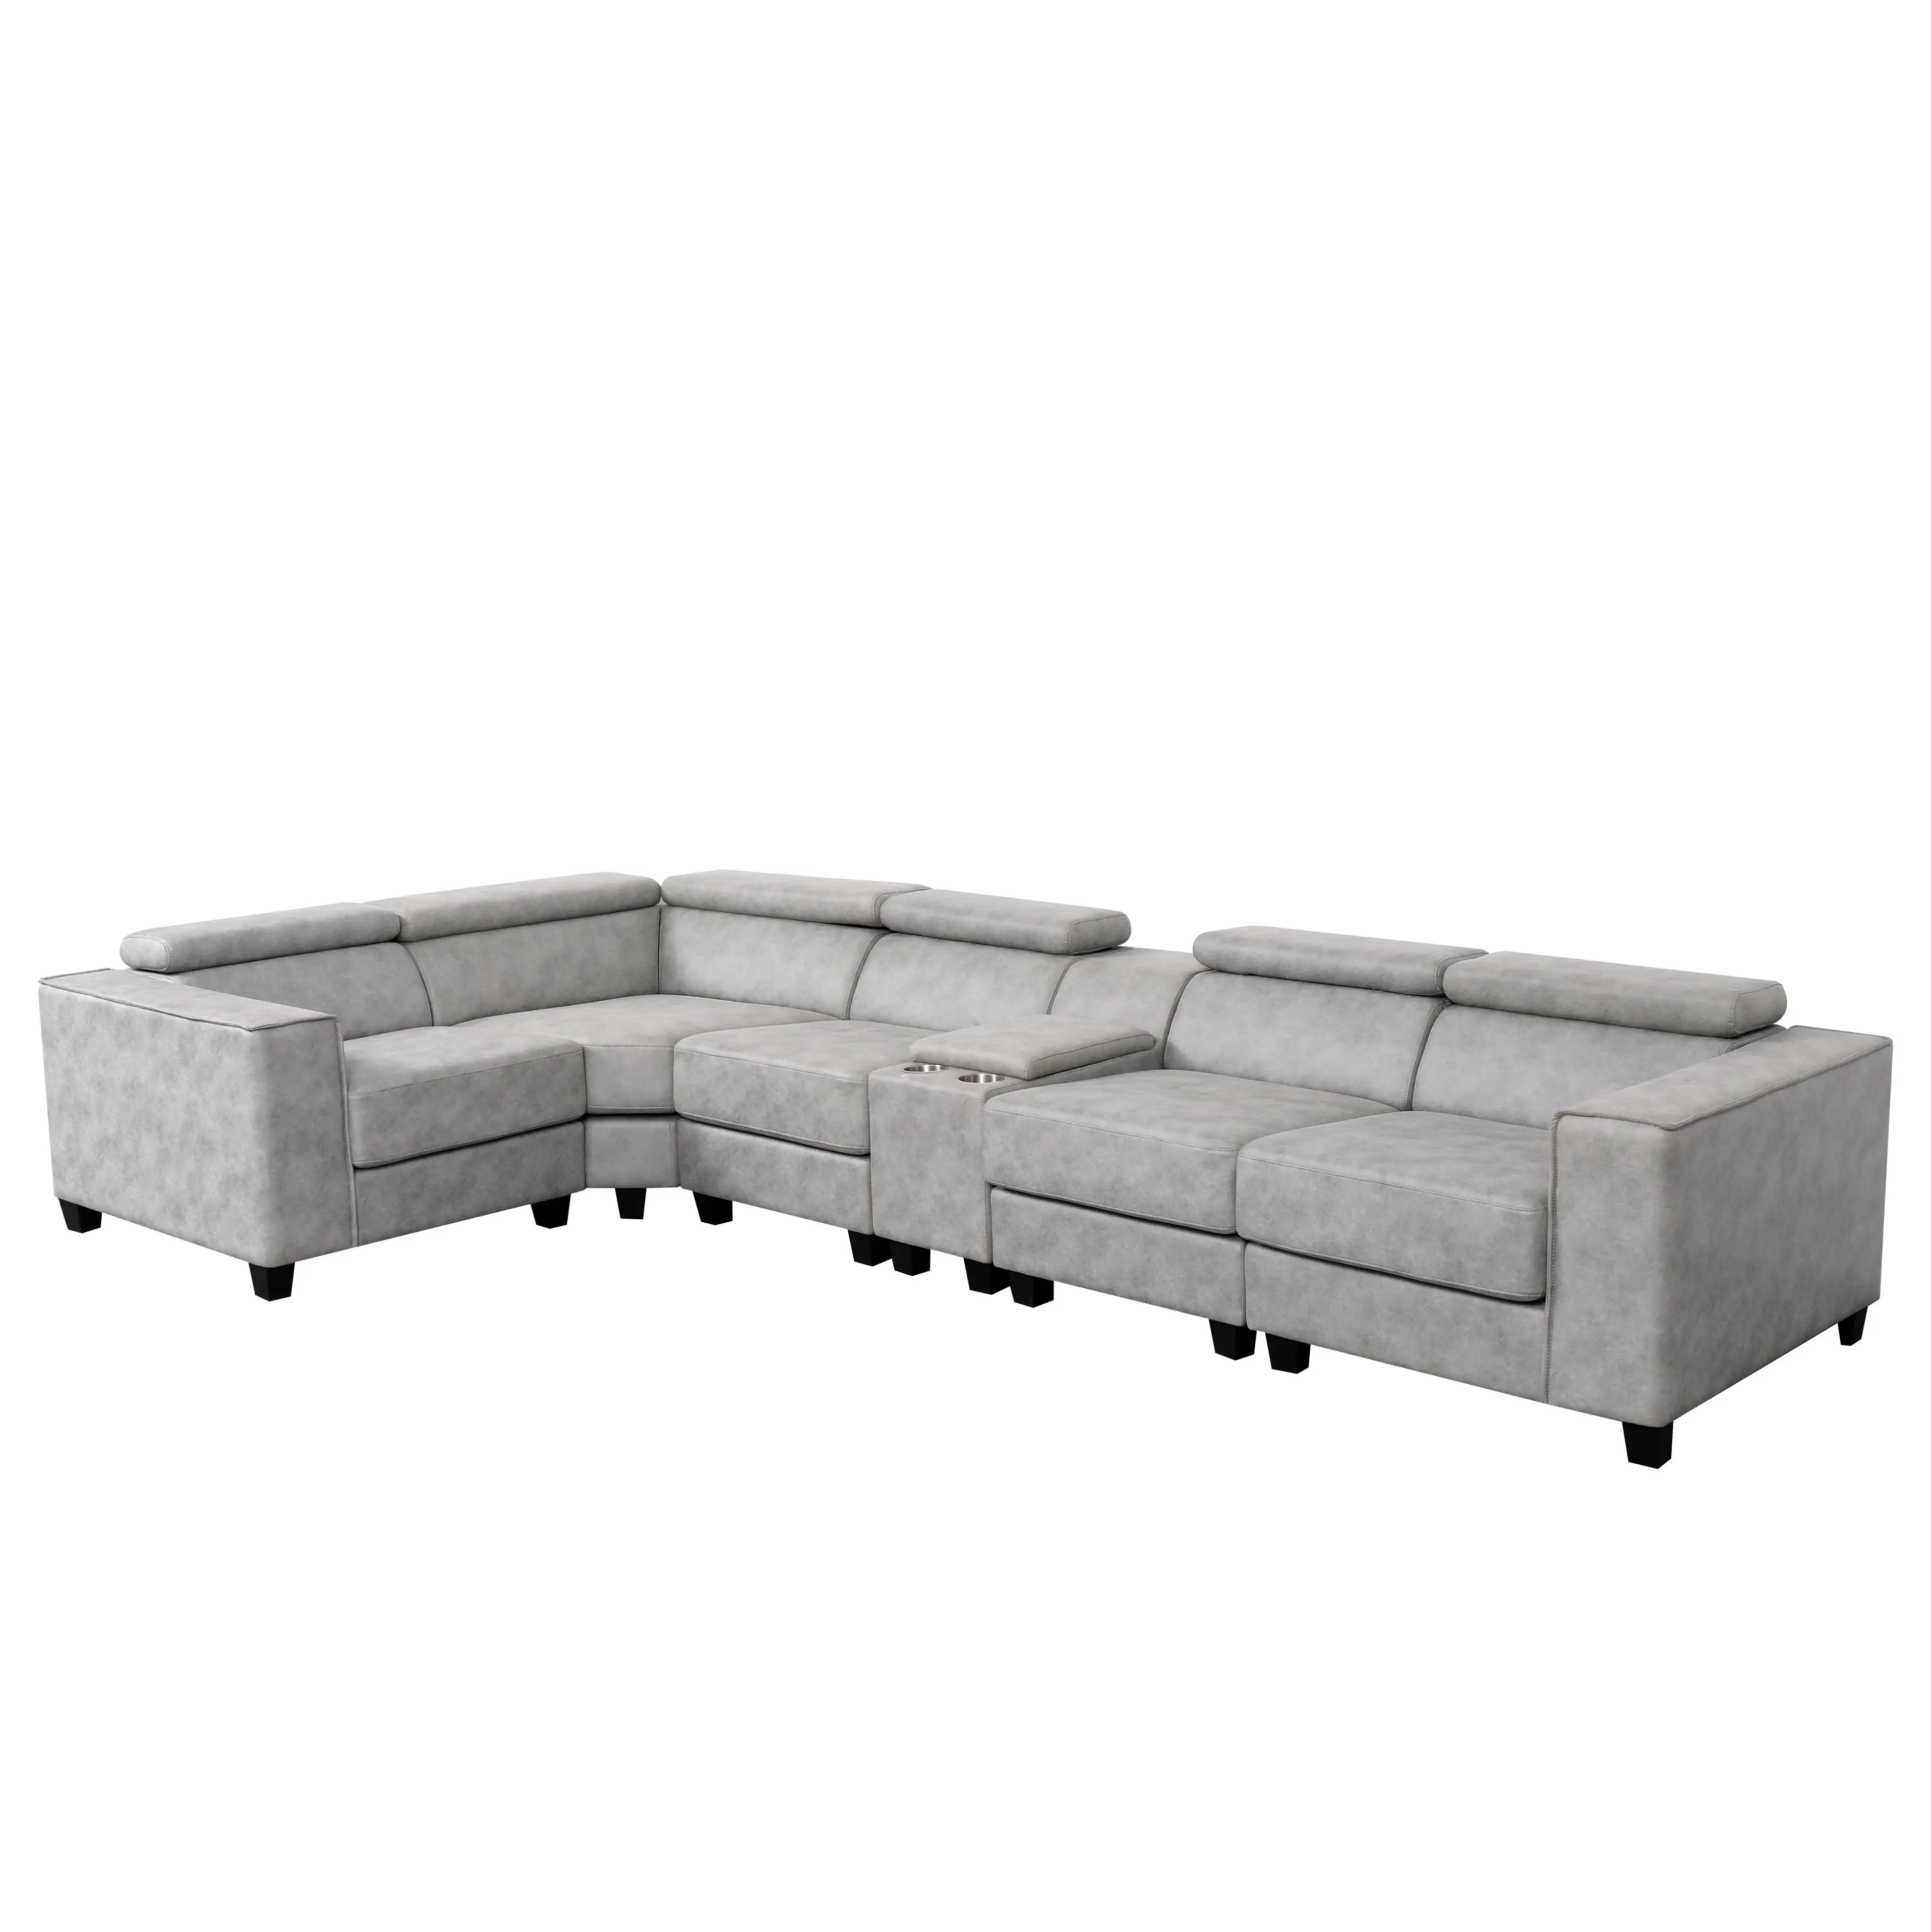 Ultimo divano design soggiorno divano, mobili divano fabbriche cina